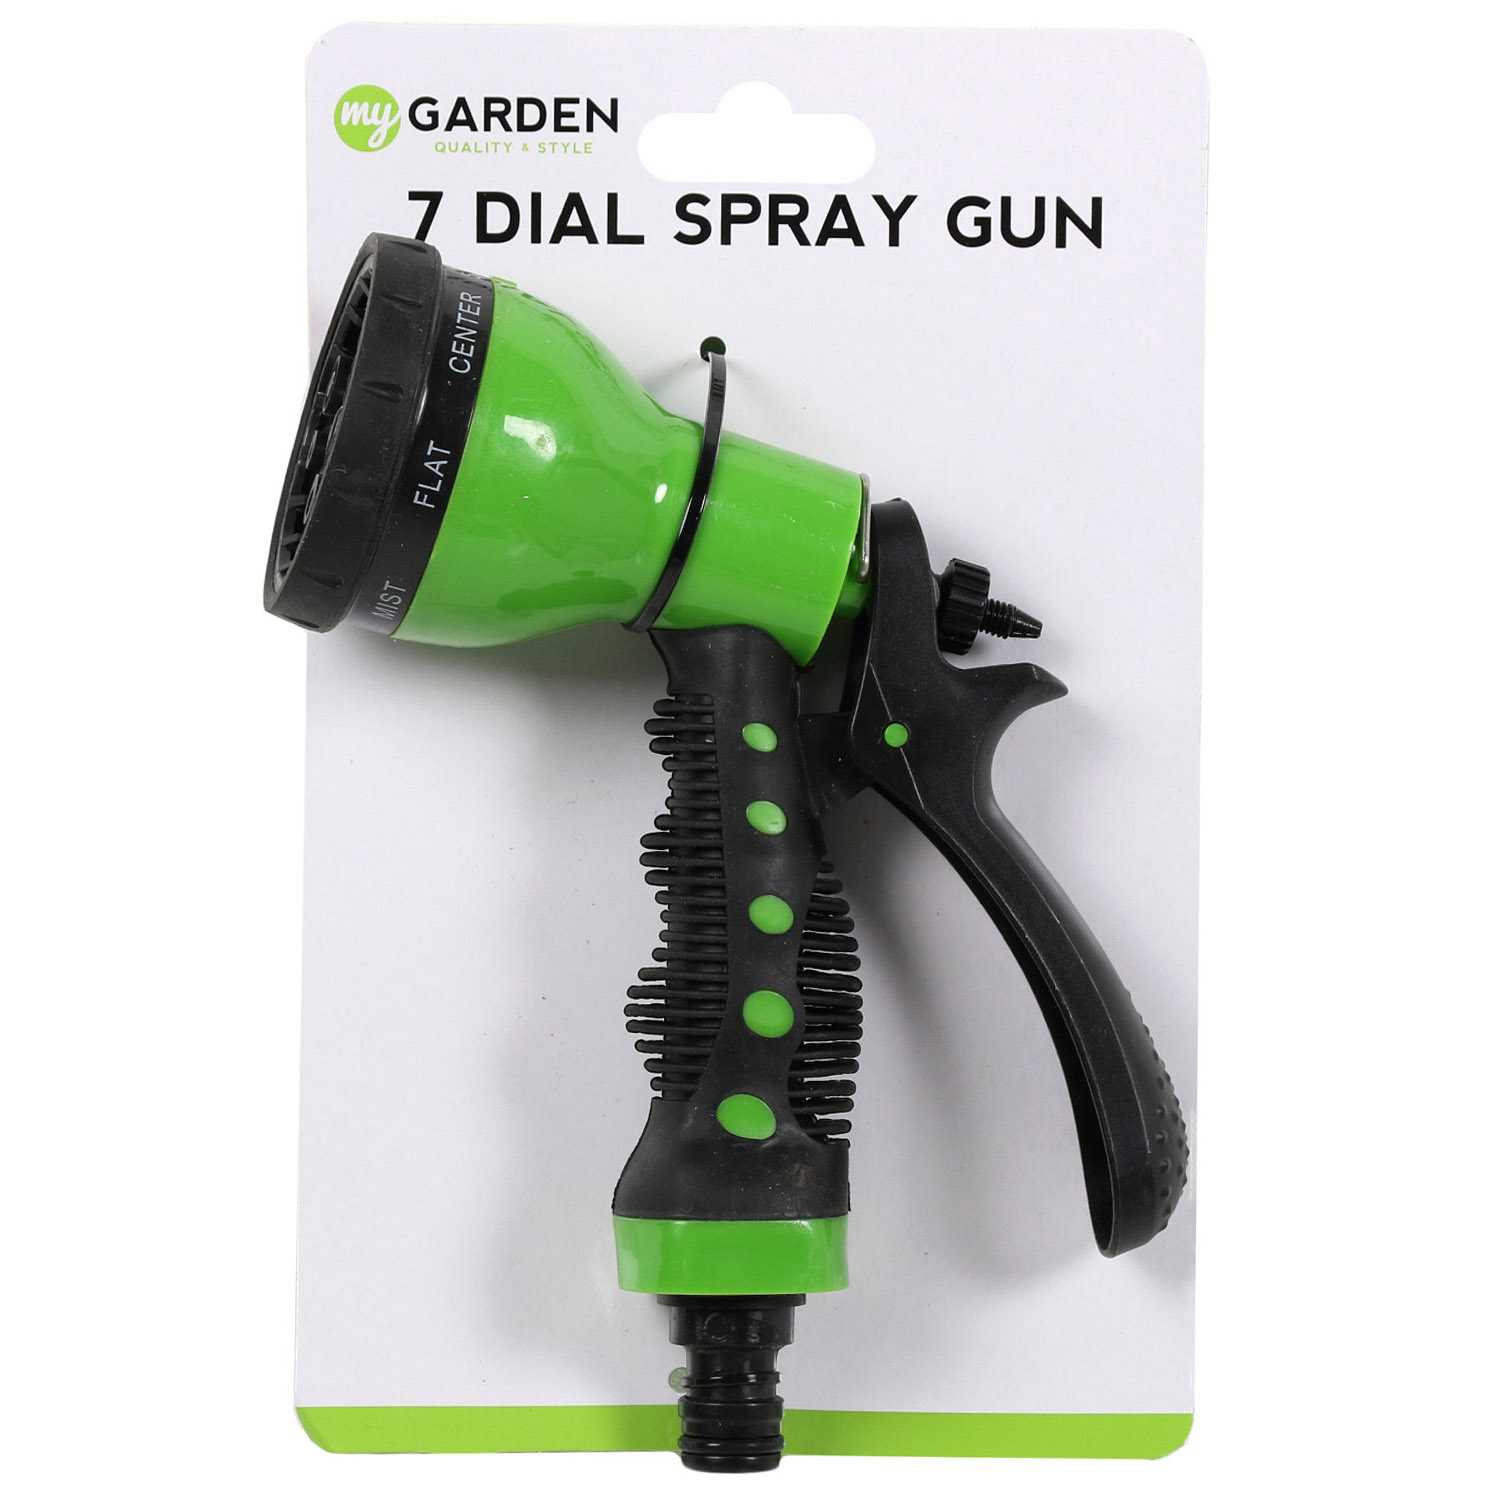 My Garden 7 Dial Spray Gun Image